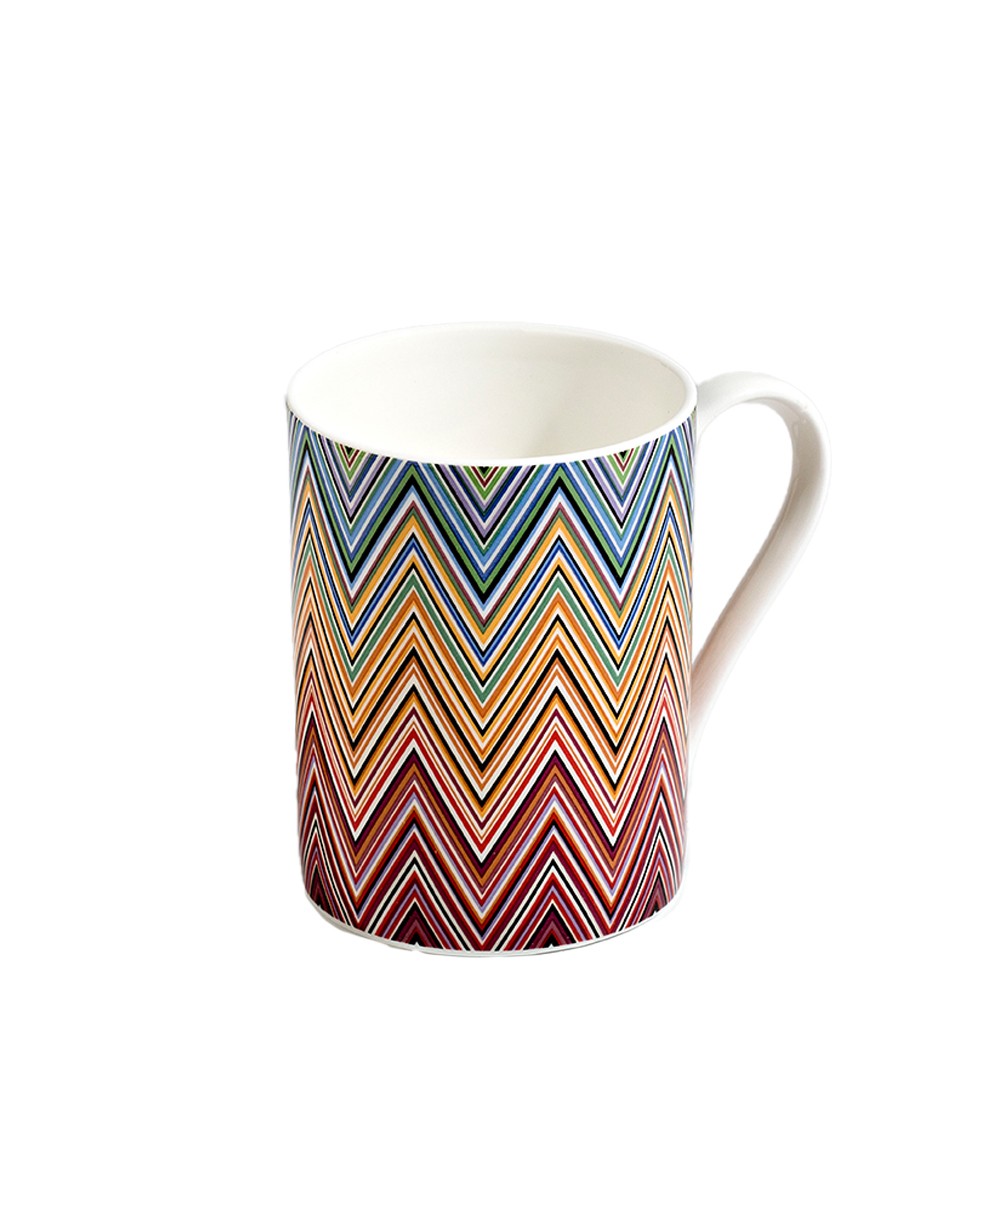 Produktbild der Kaffee Tasse Zig Zag in der Farbe Jarris 156 von Missoni - RAUM concept store